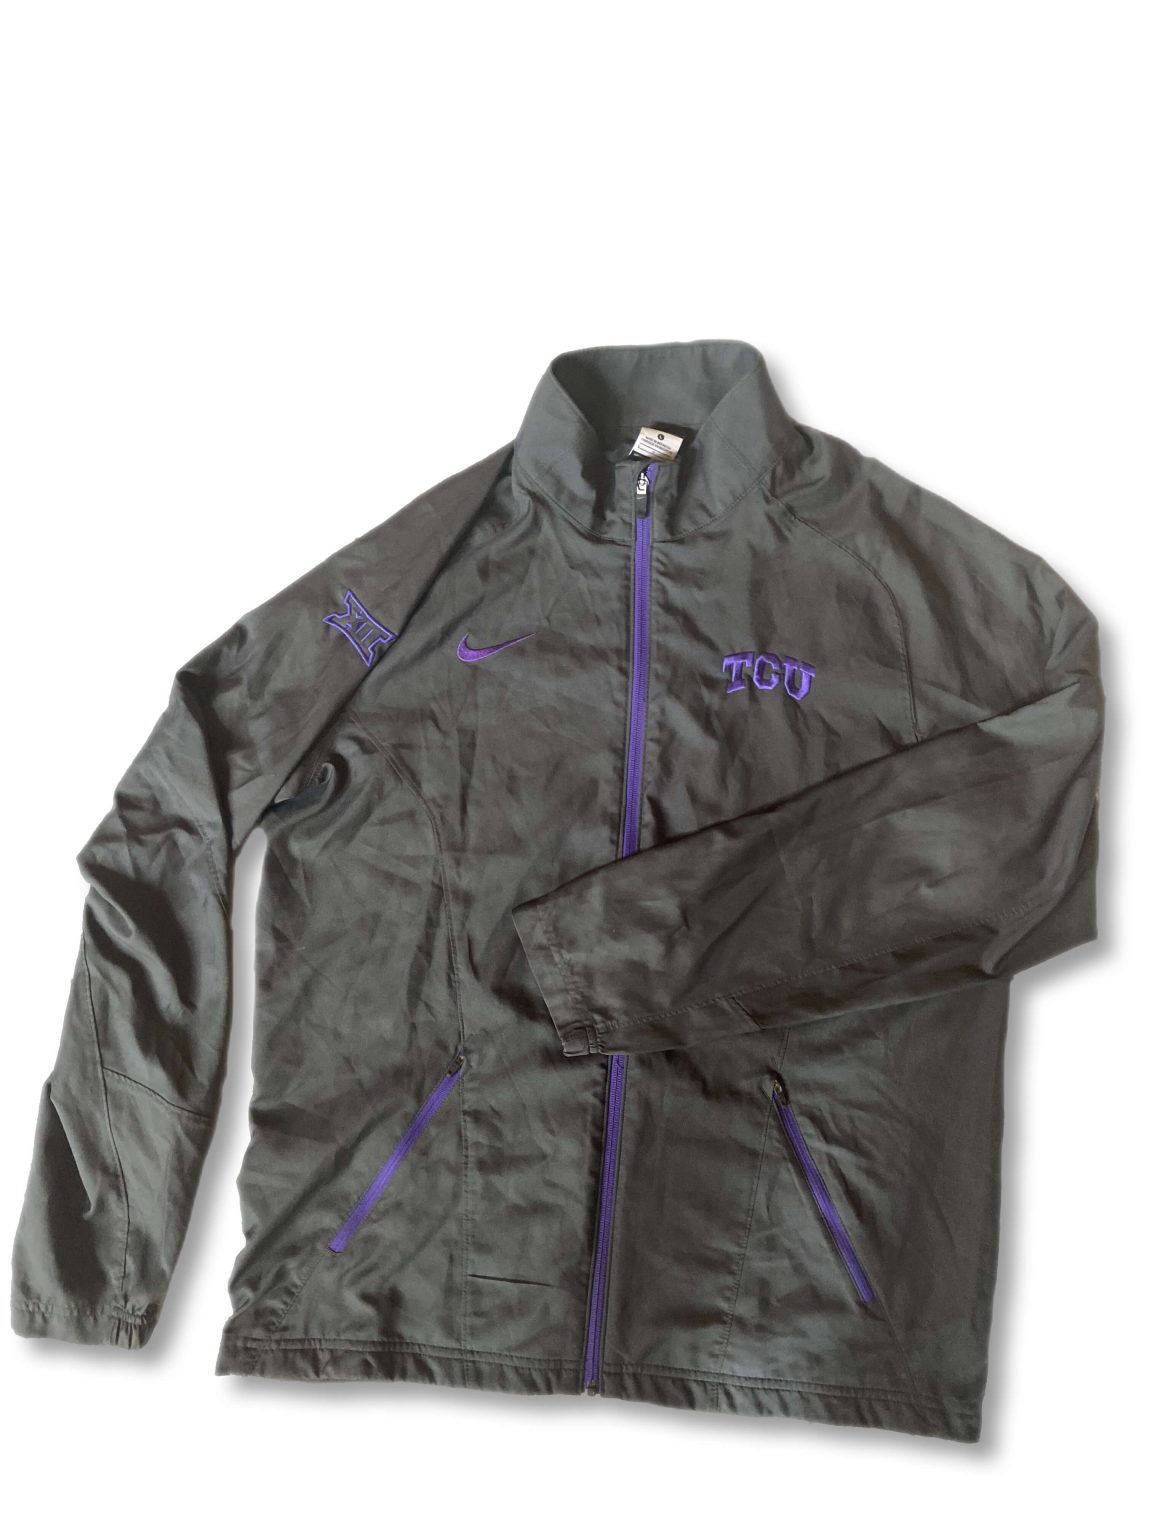 TCU Jacket : NARP Clothing